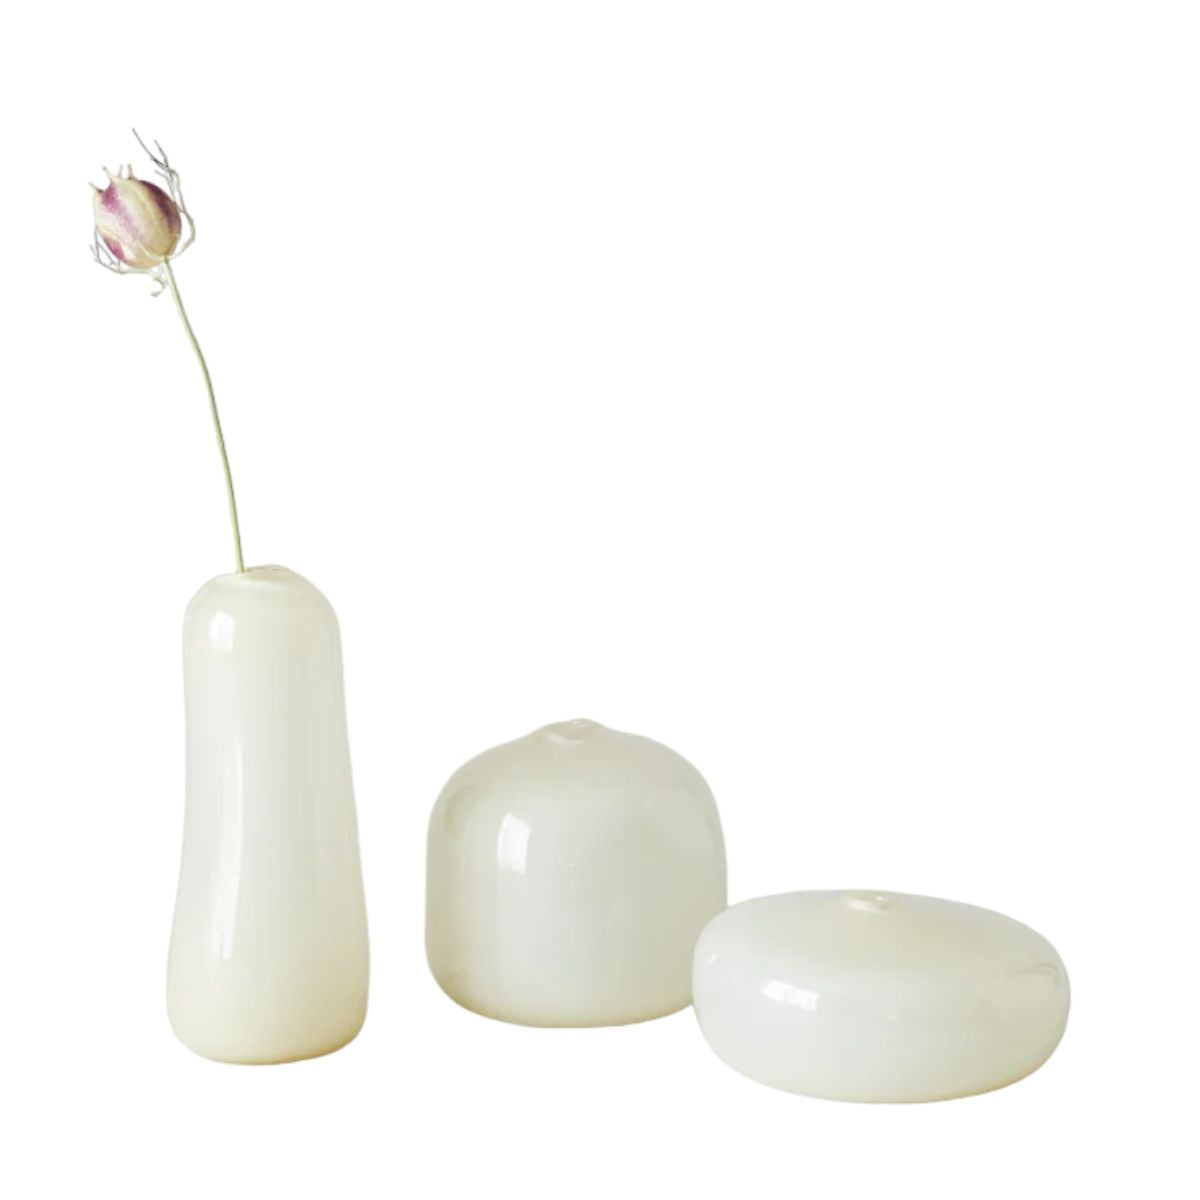 Little Gem Vases, White-Bespoke Designs